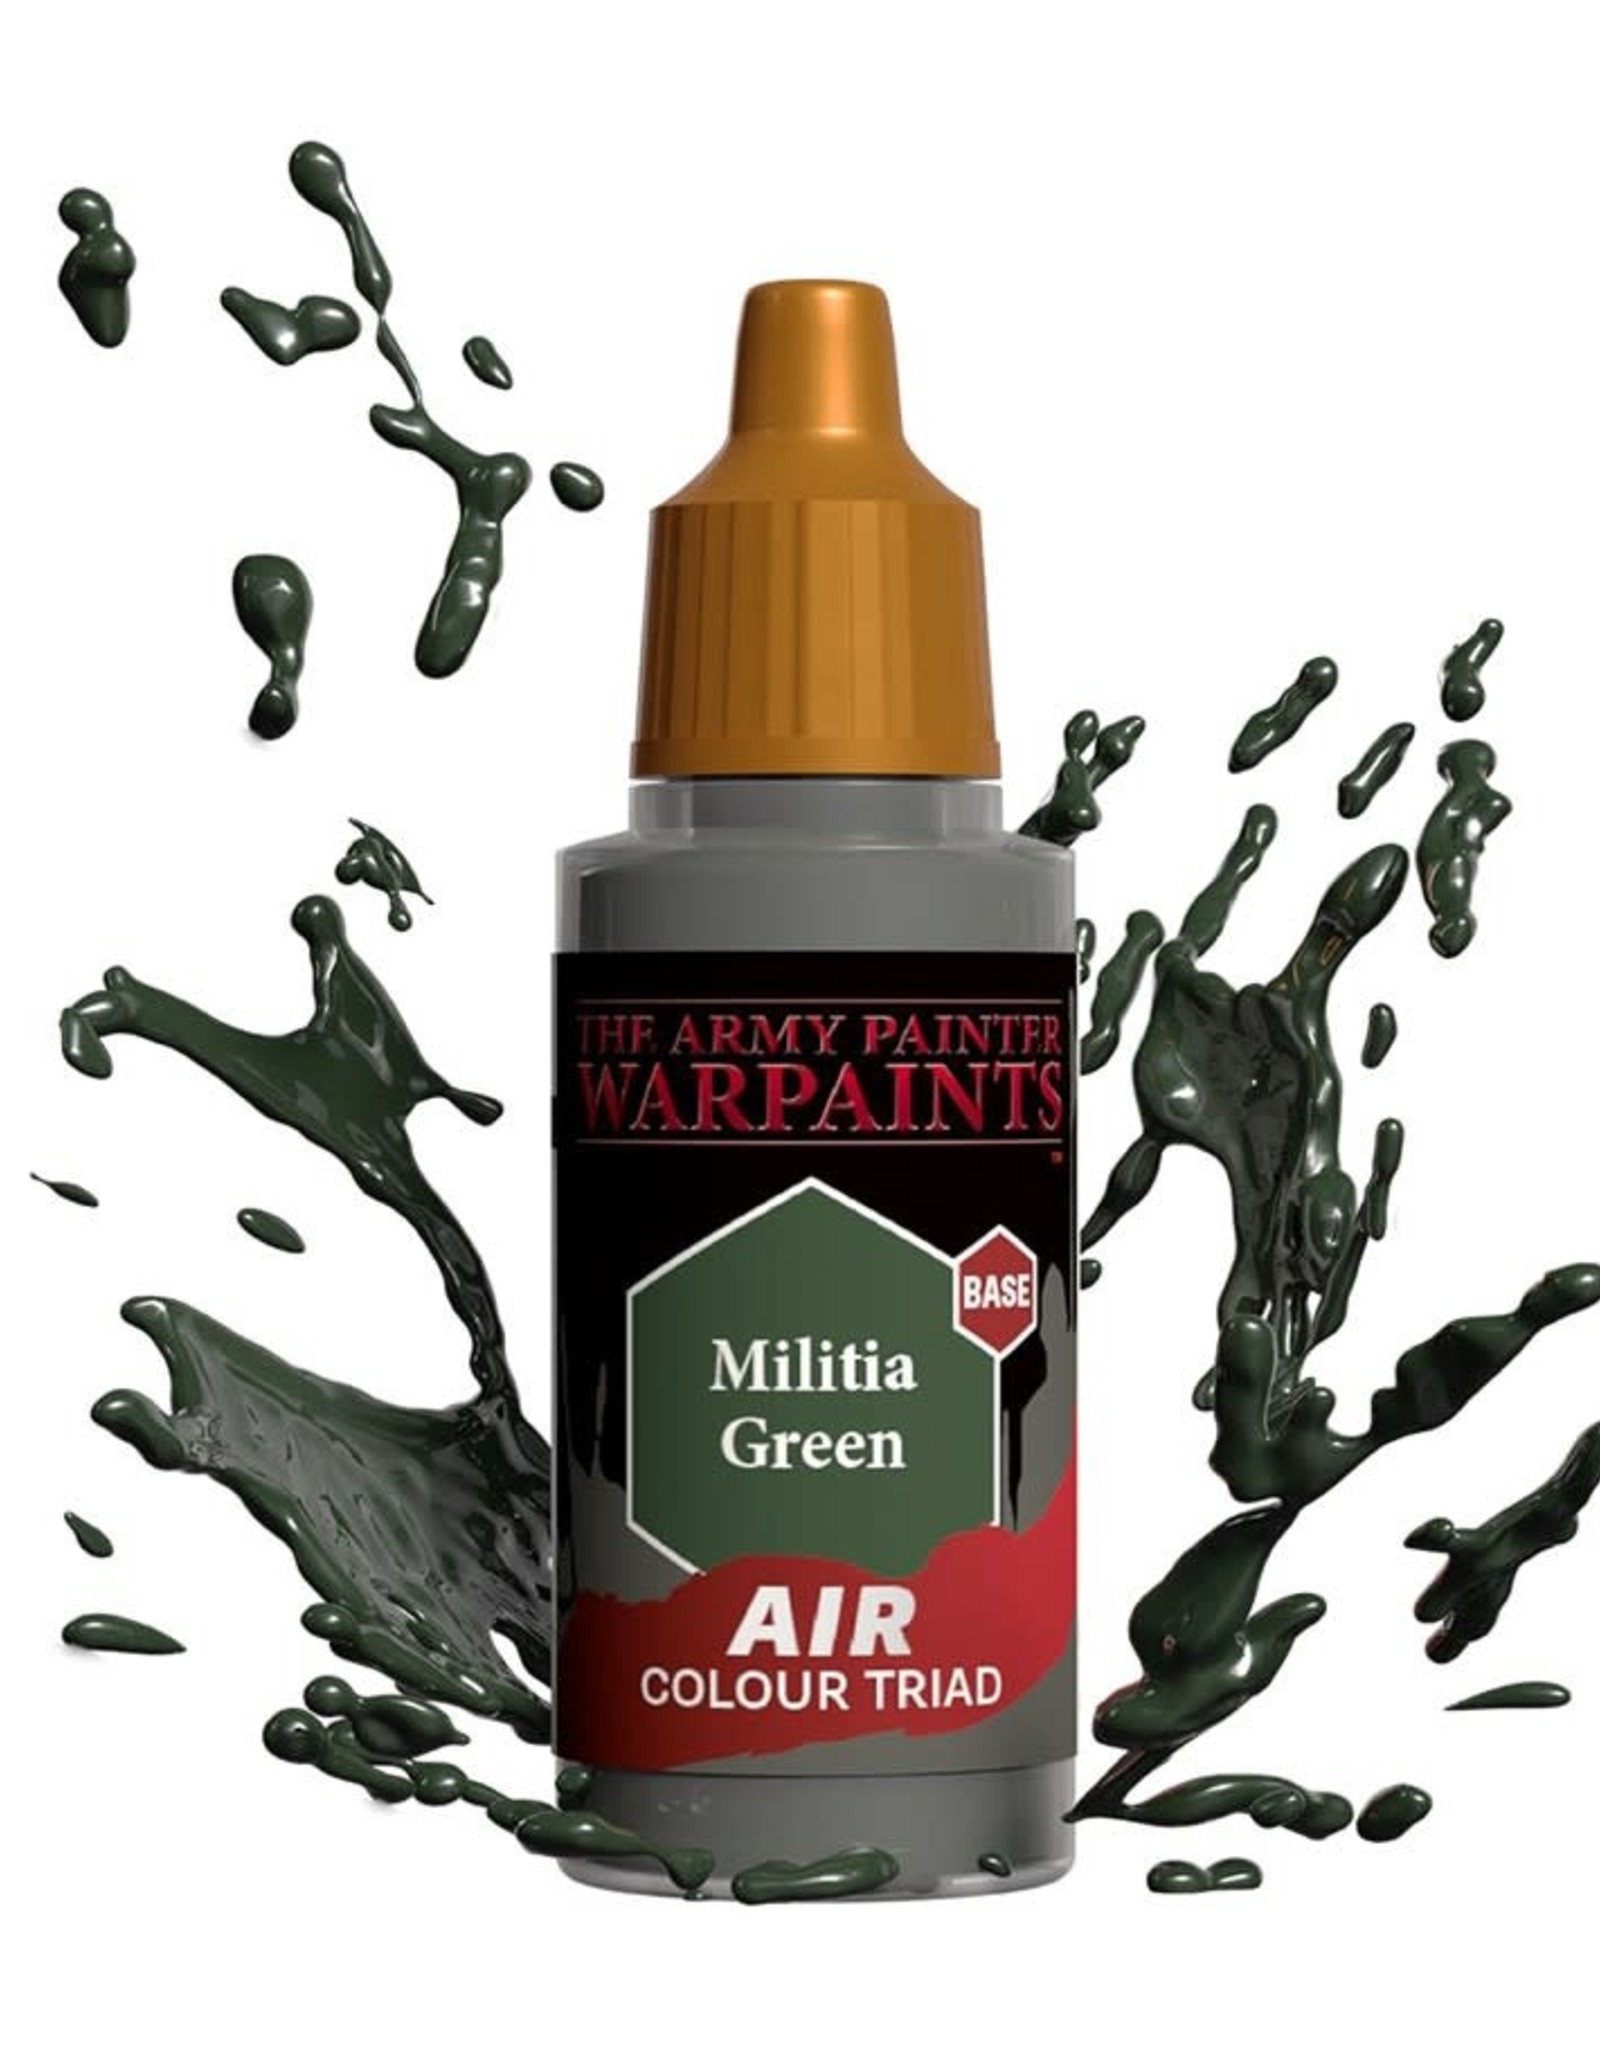 Warpaints Air: Militia Green